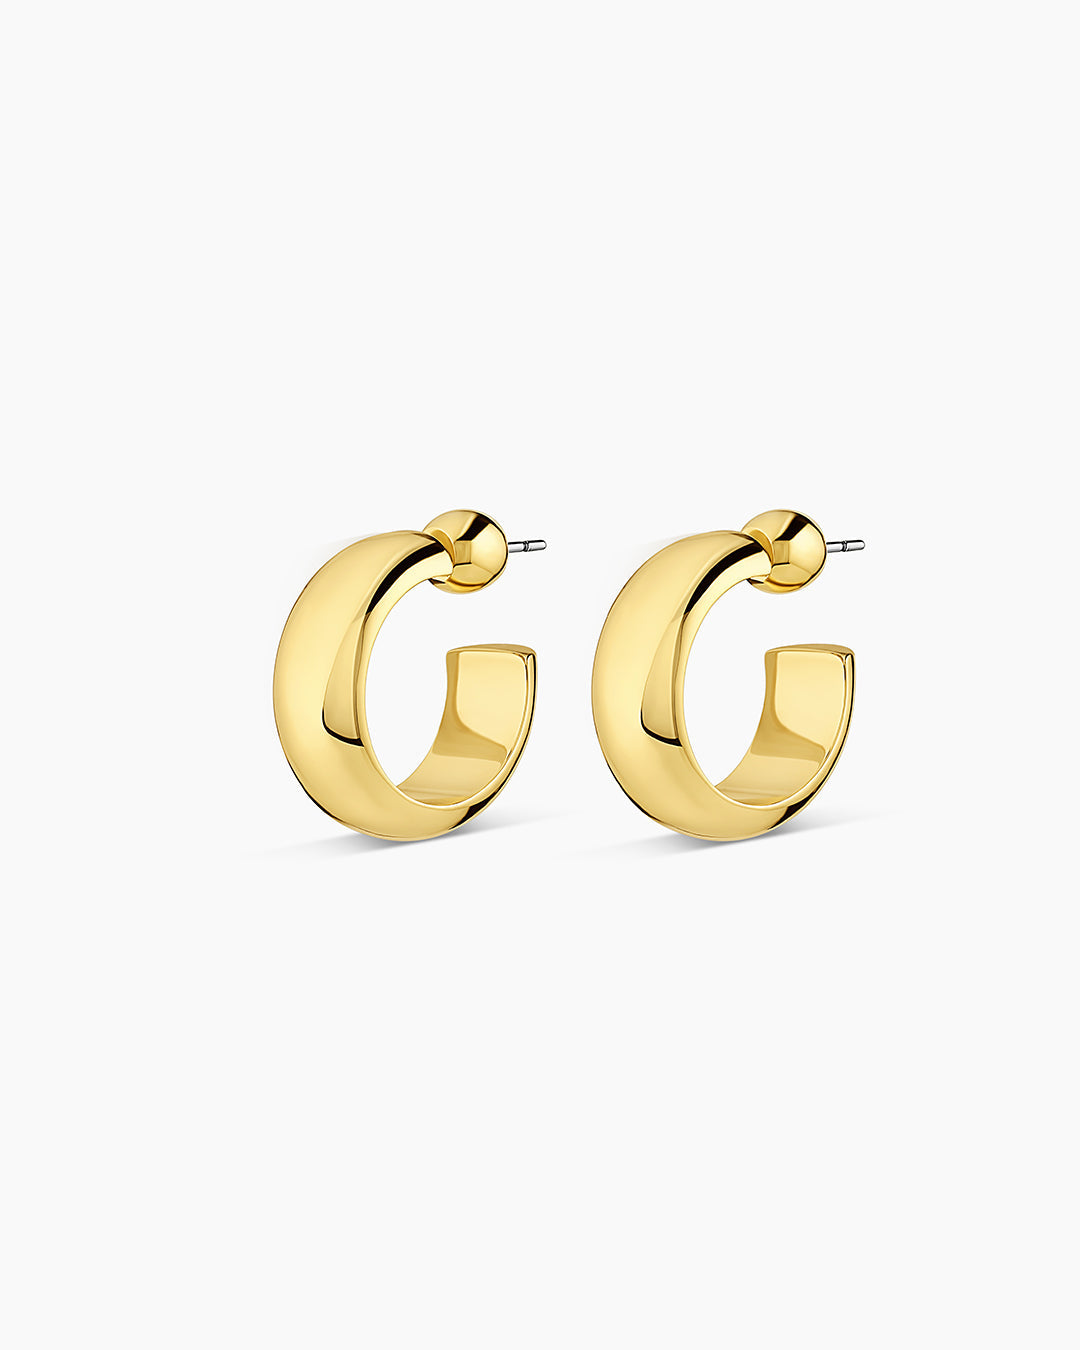 Buy One Gram Gold Modern Earrings 3 Line Long Chain Hoop Earrings Buy Online